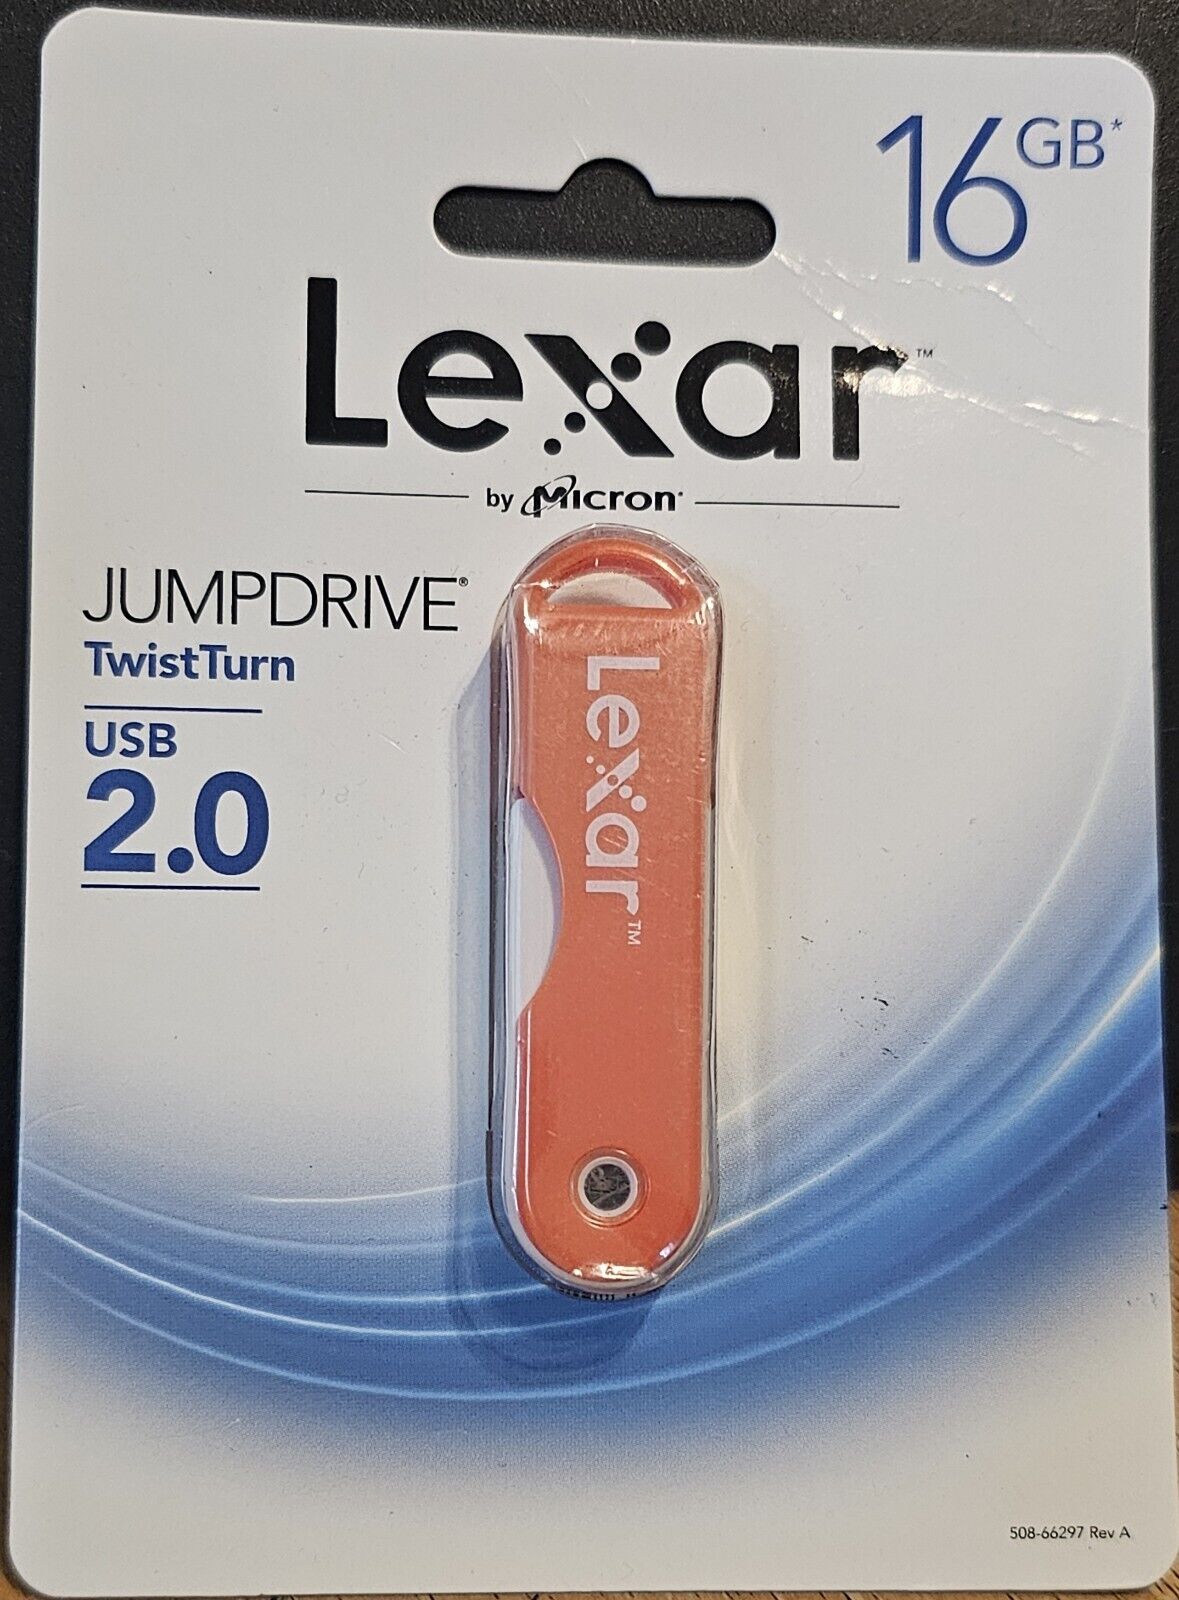 Lexar by Micron JUMPDRIVE TwistTurn USB 2.0 16GB Pink